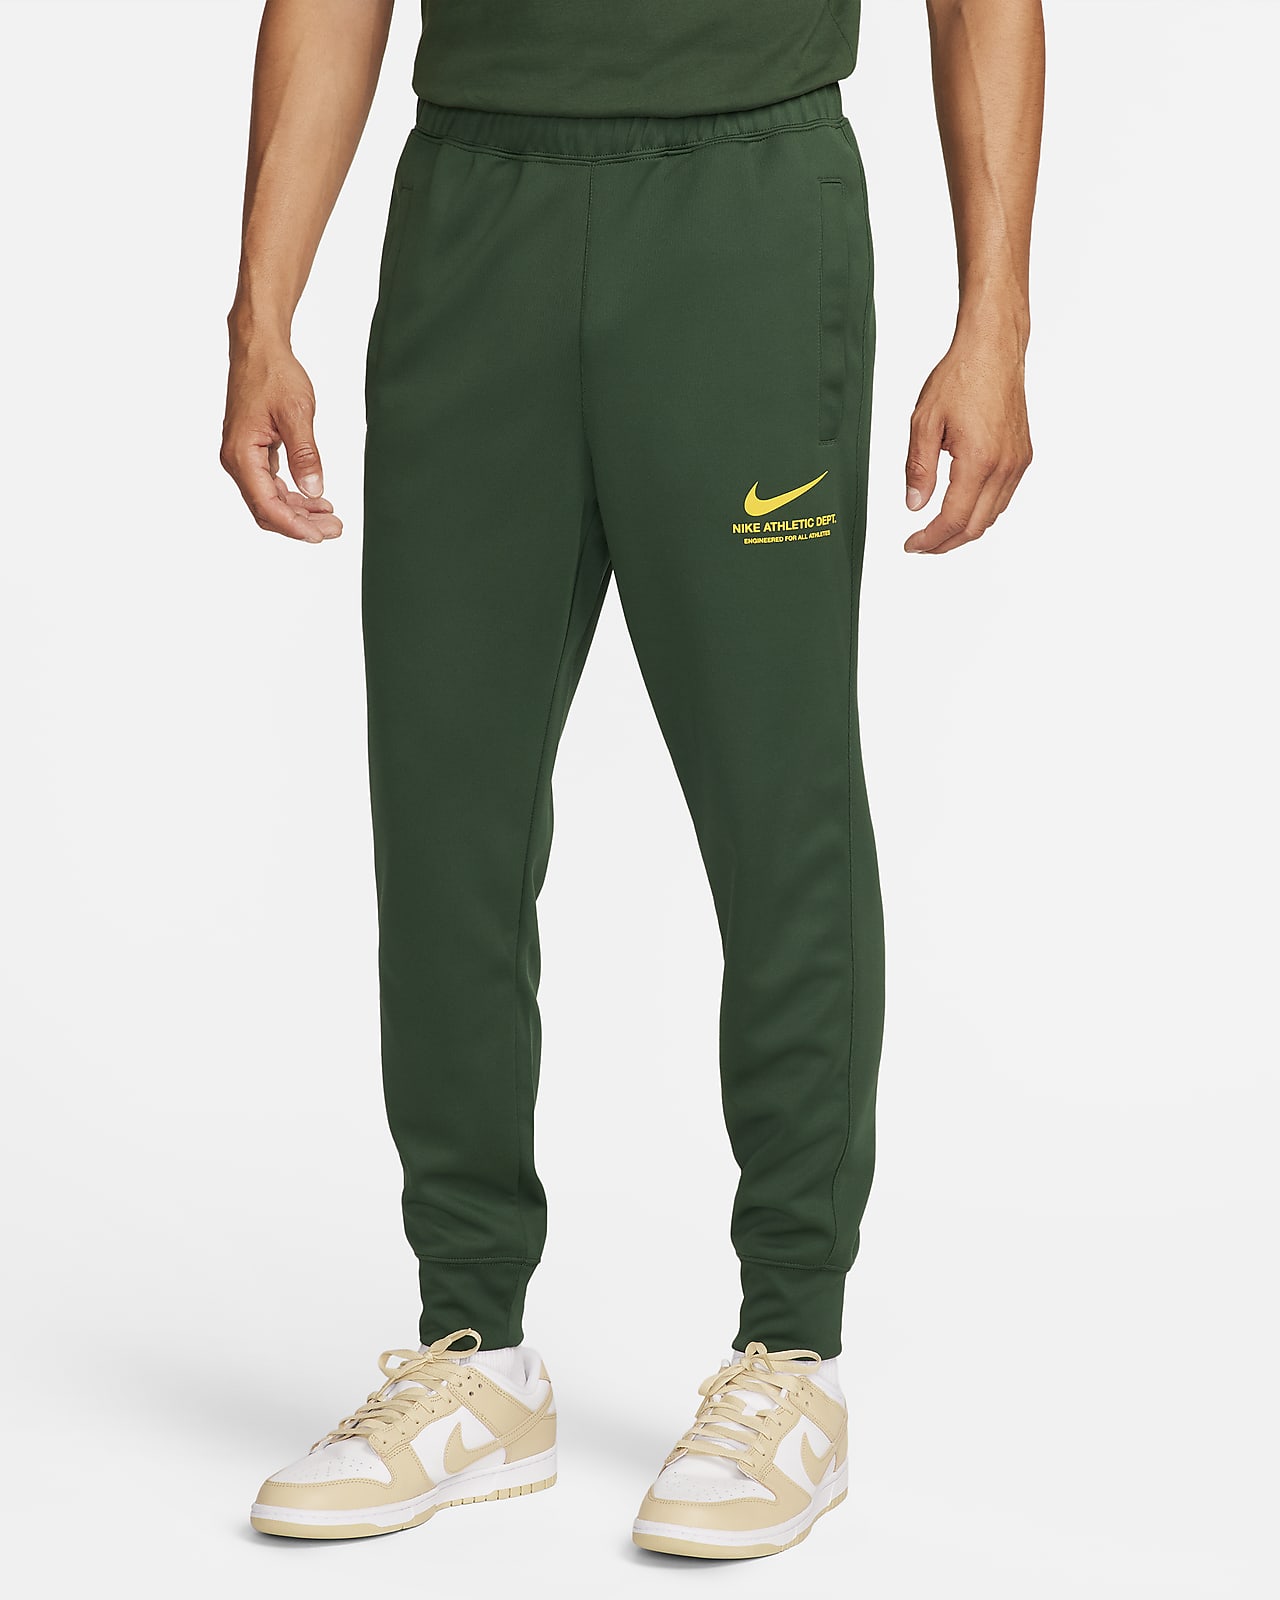 Sobriquette ækvator Svinde bort Nike Sportswear-bukser til mænd. Nike DK